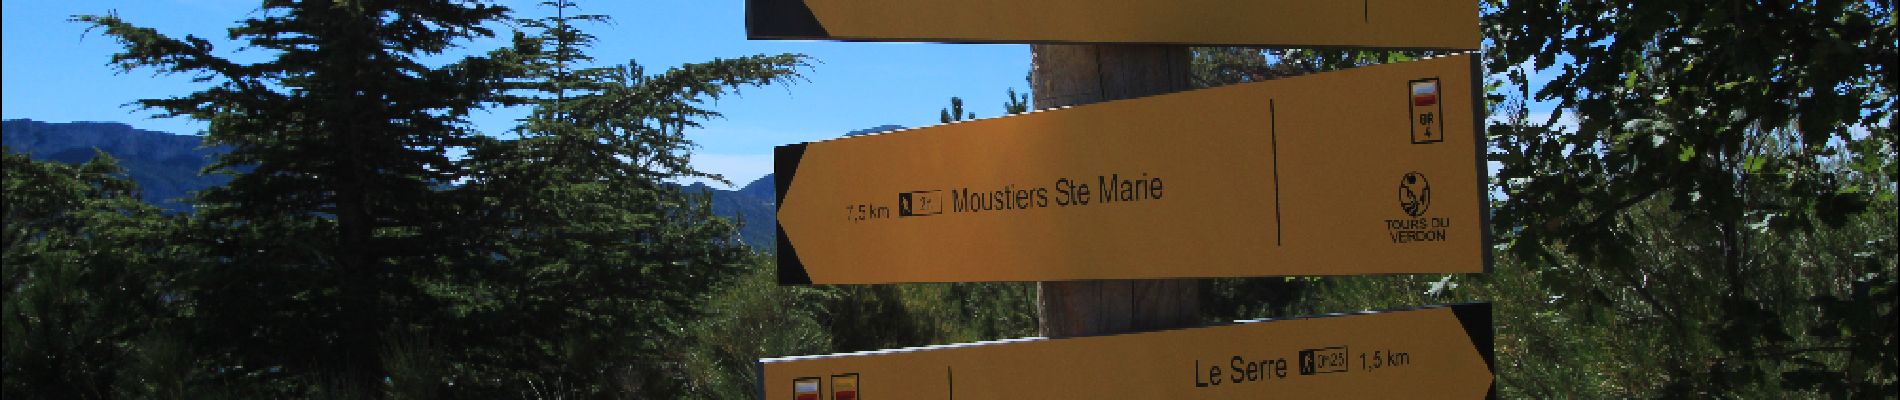 POI Moustiers-Sainte-Marie - moustiers - Photo